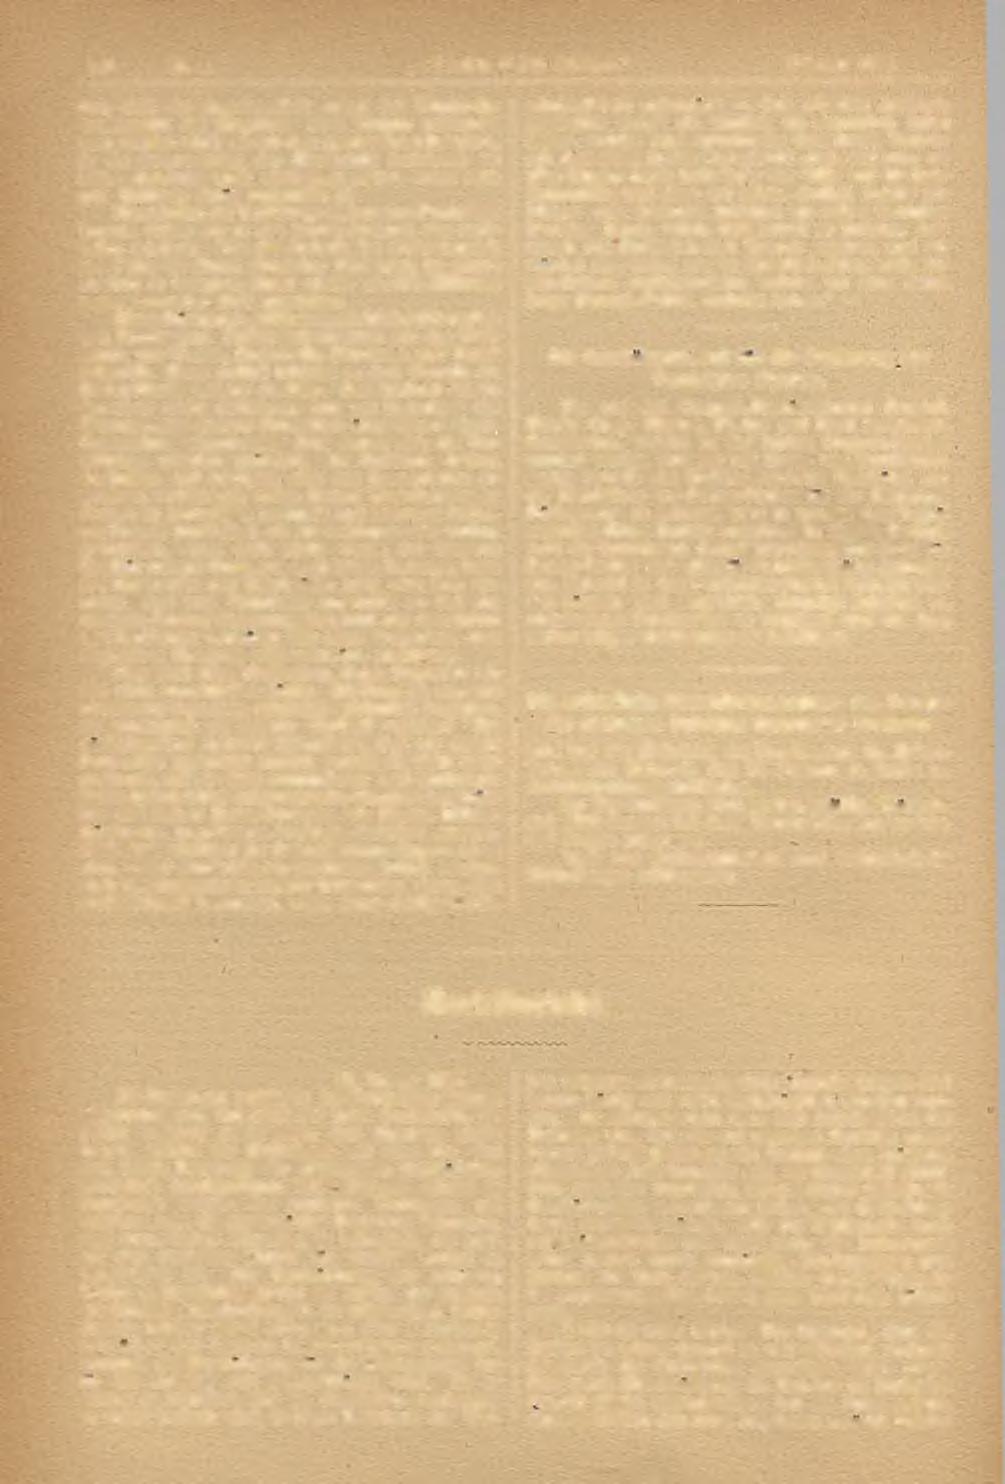 140 Nr. 2. STAHL UNII KI SEN." Februar 1886.